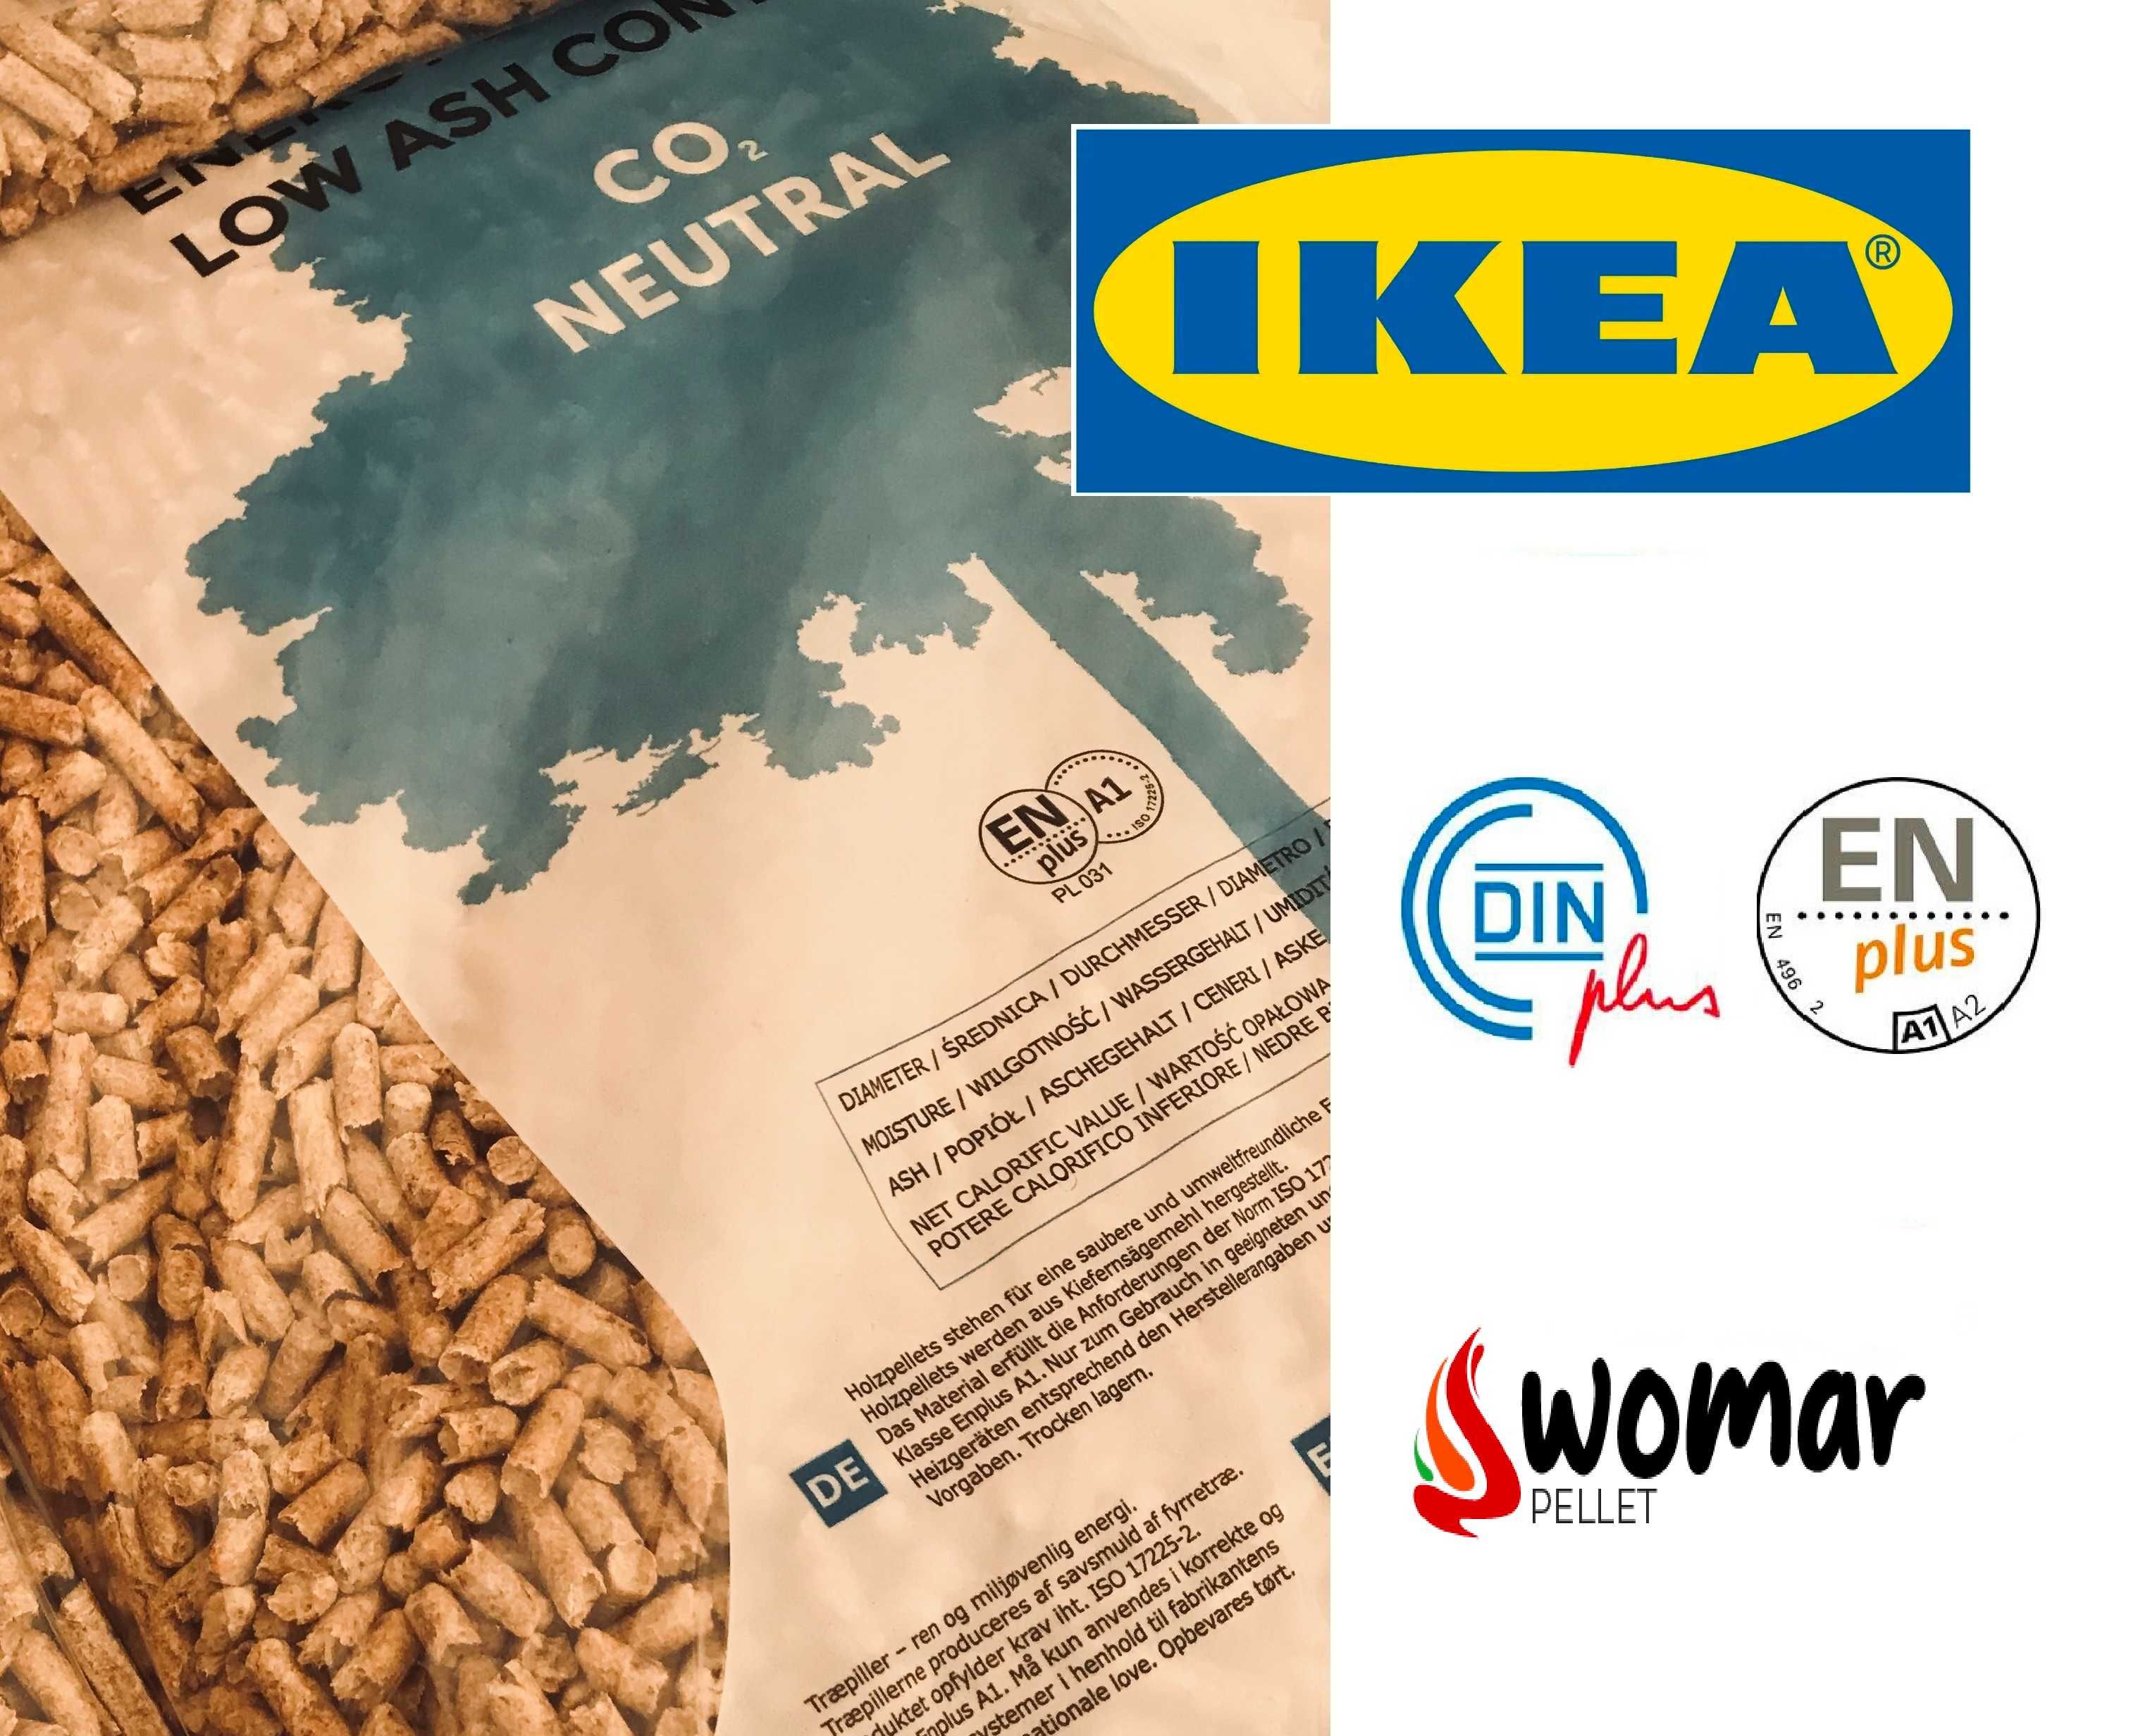 Pellet drzewny IKEA Certyfikat EN+A1 DIN+ Z DOWOZEM najwyższa jakość